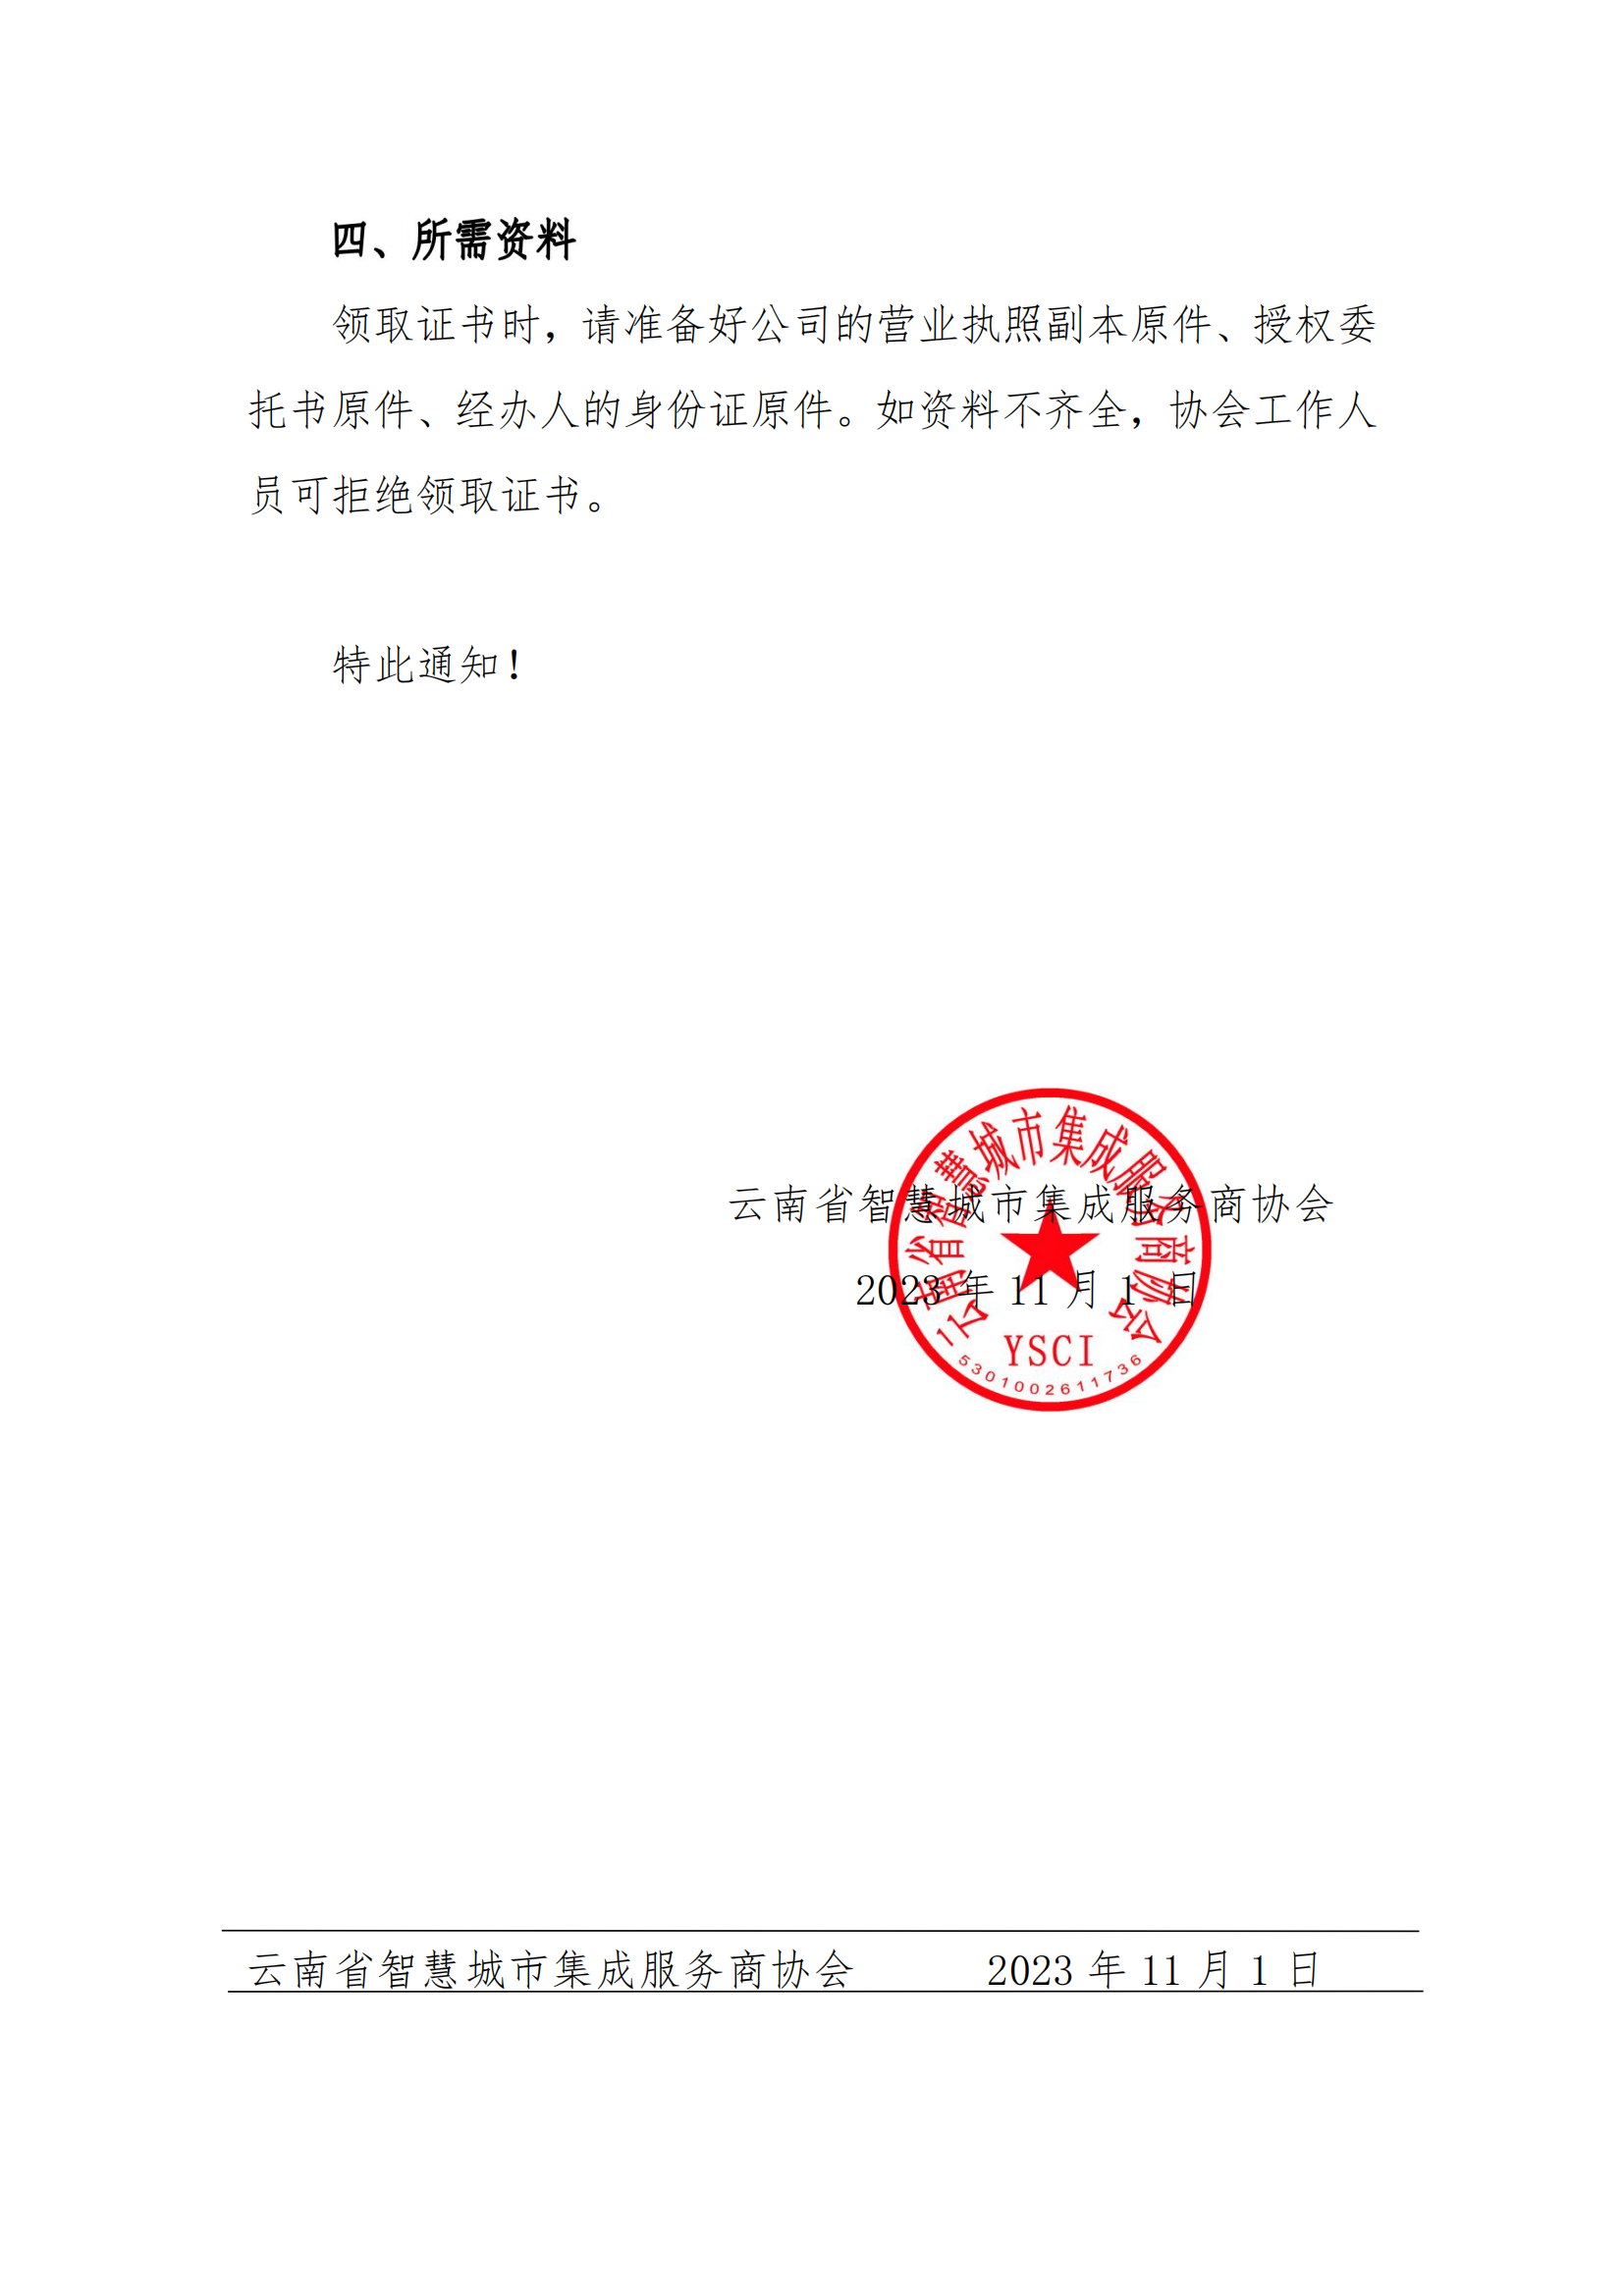 关于第八批《云南省安全技术防范行业资信证》领证通知_01.png